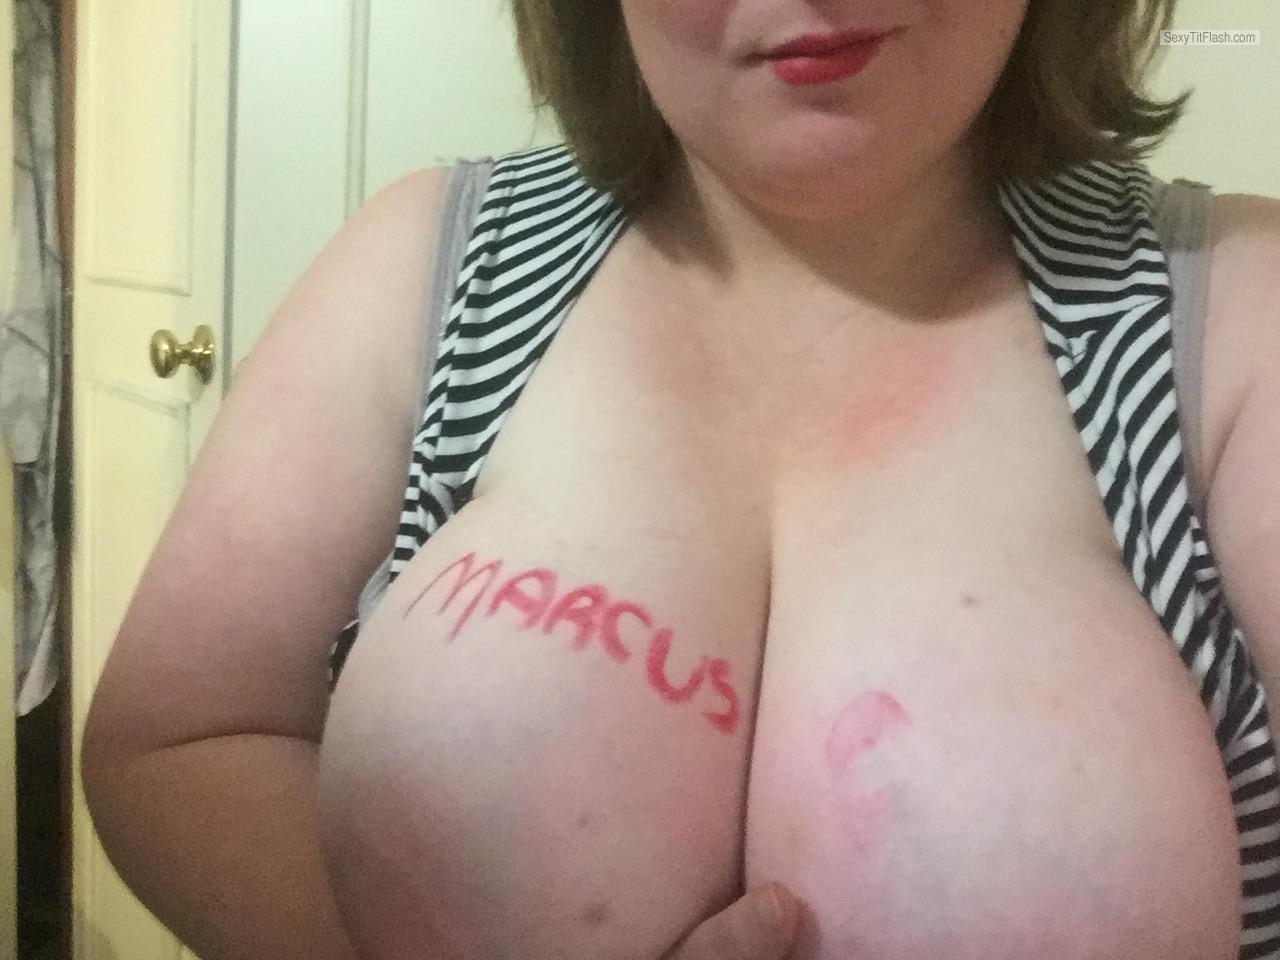 My Very big Tits Selfie by Juicy_girlxxx